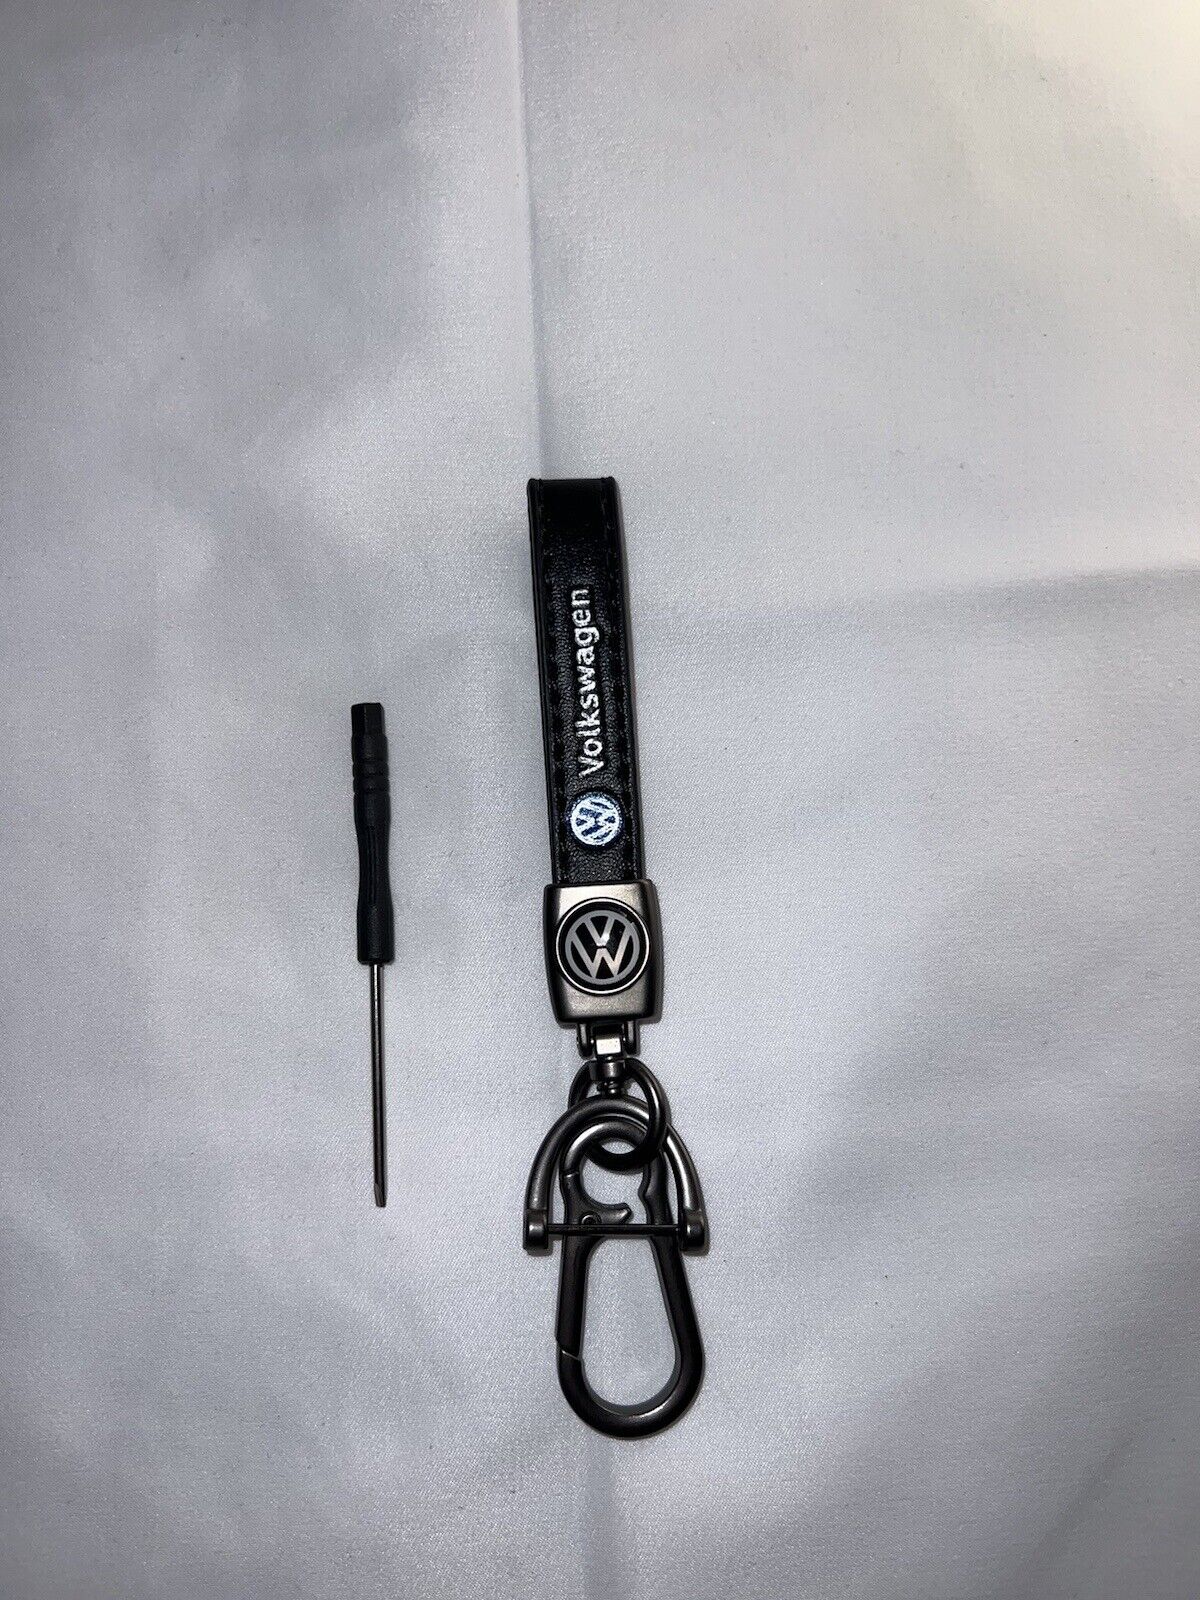 Volkswagen Genuine Leather Car Keychain